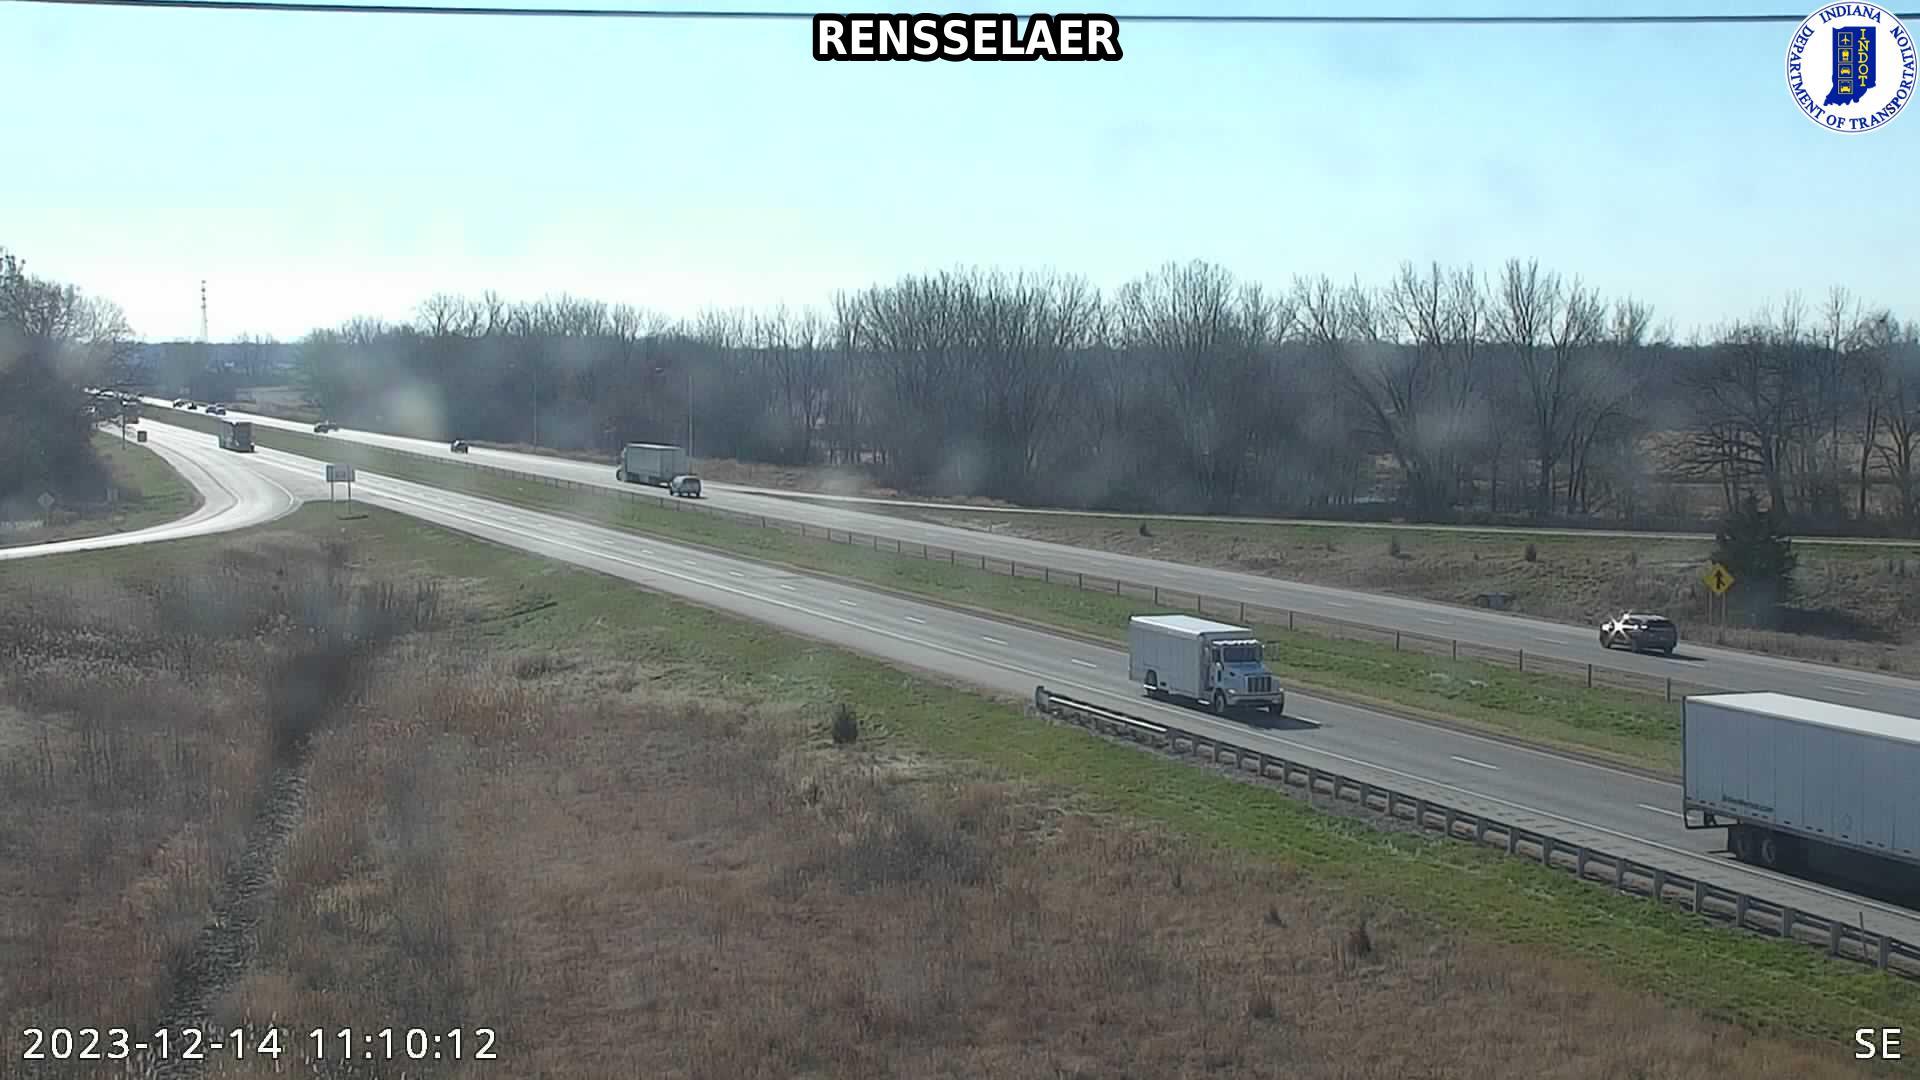 Rensselaer: I-65 Traffic Camera